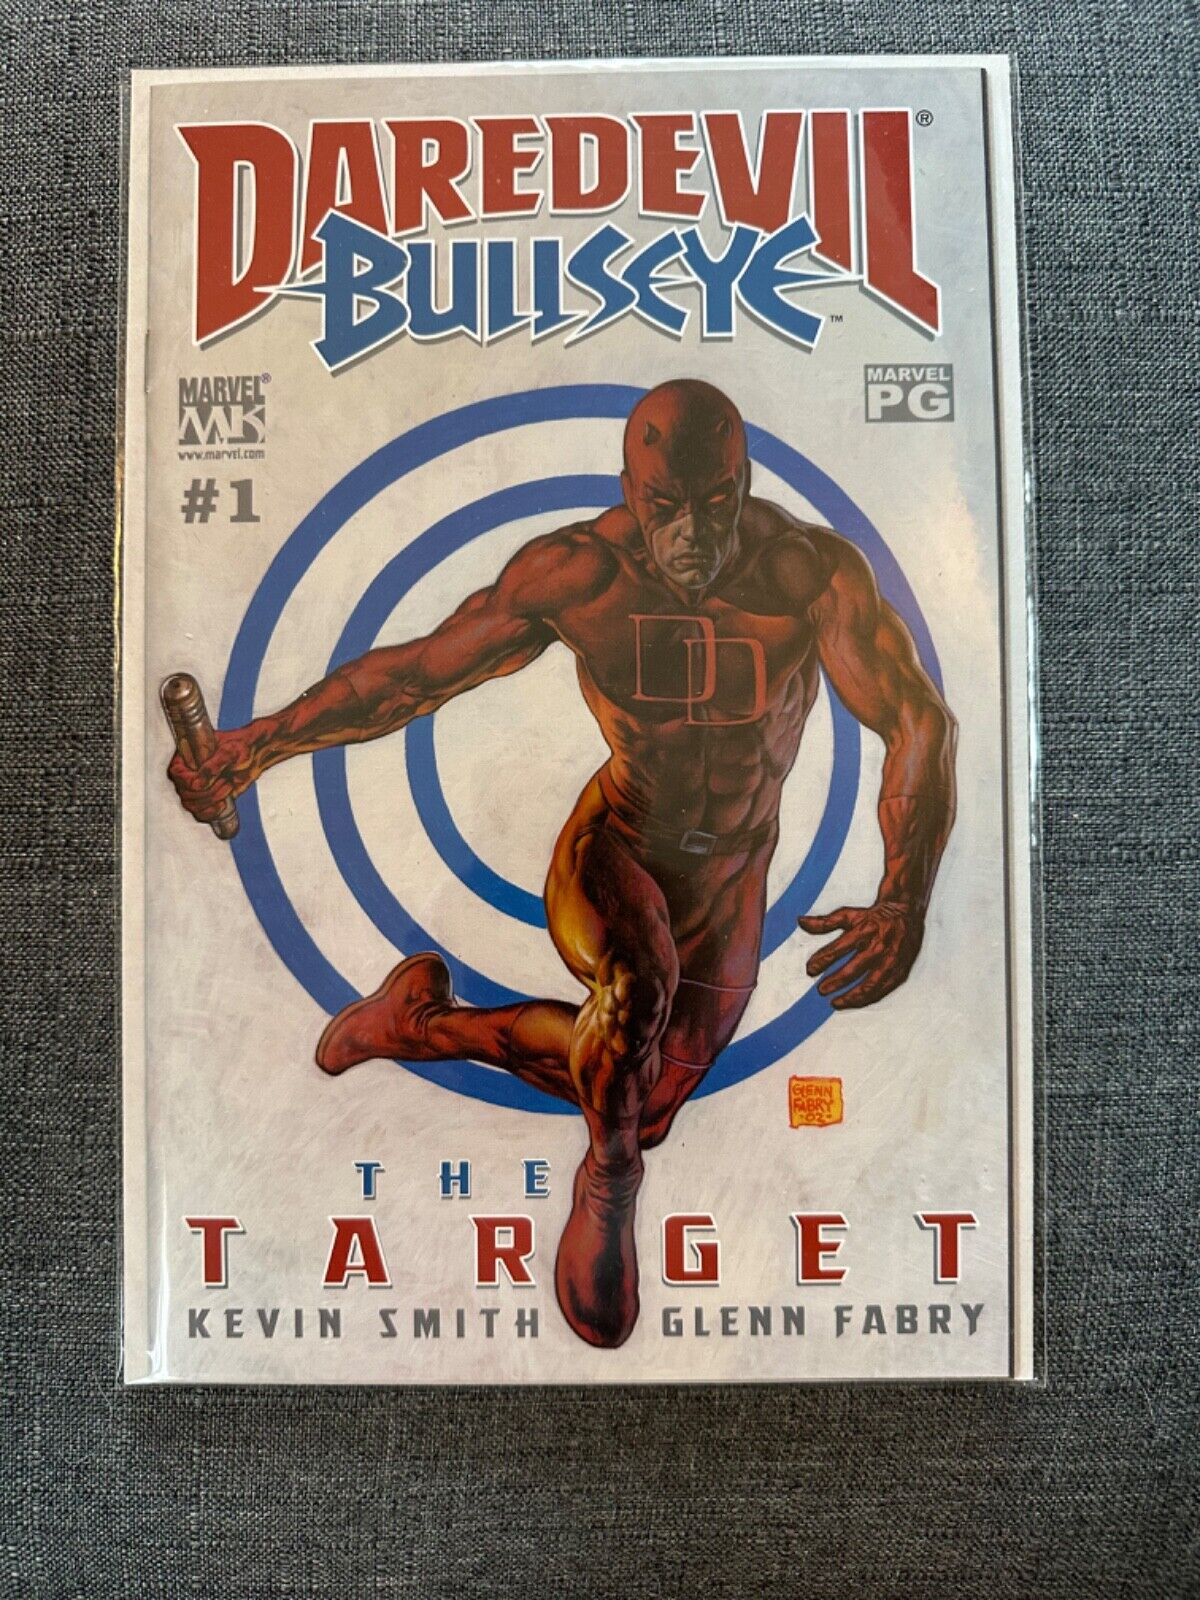 Daredevil Bullseye - The Target #1 - Kevin Smith